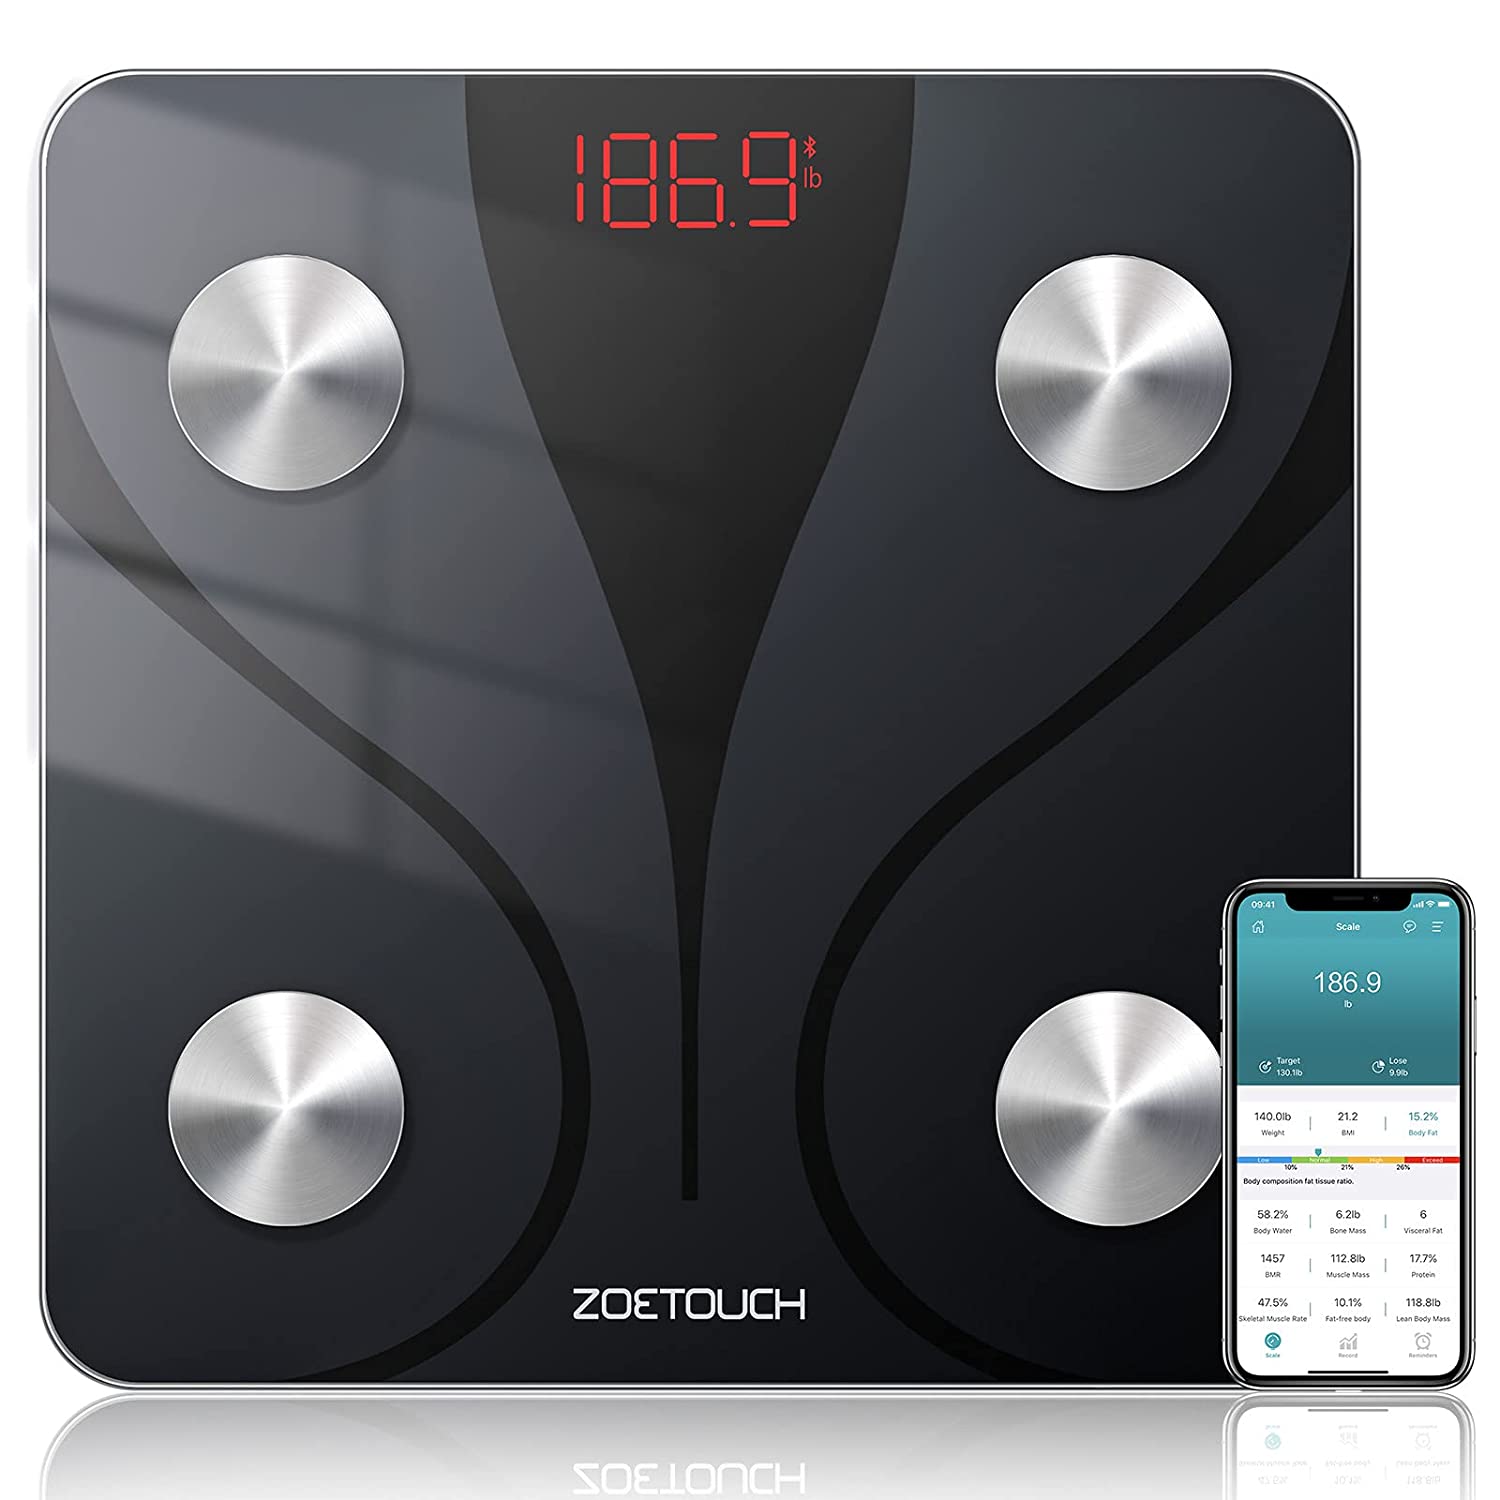 ZOETOUCH Multi-User Bluetooth Body Fat Monitor